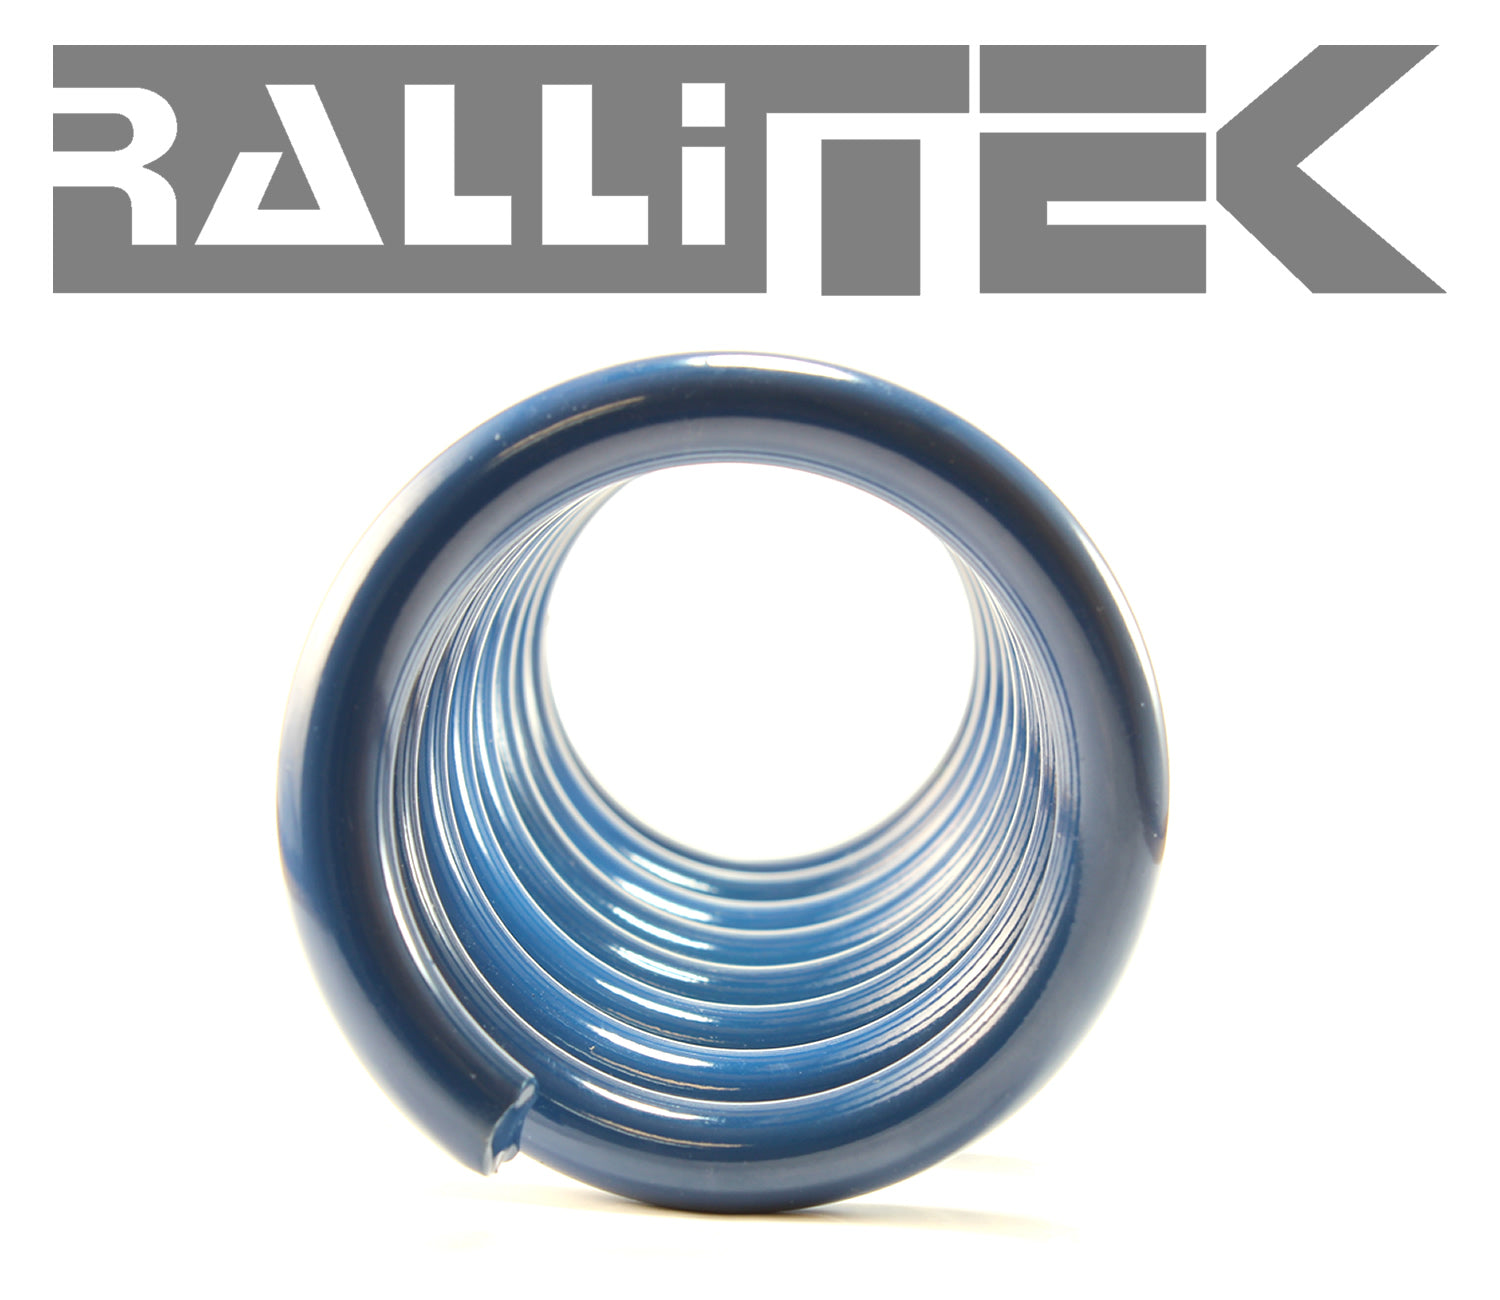 RalliTEK 1.4" Rear Raised Overload Springs - Outback 2010-2014